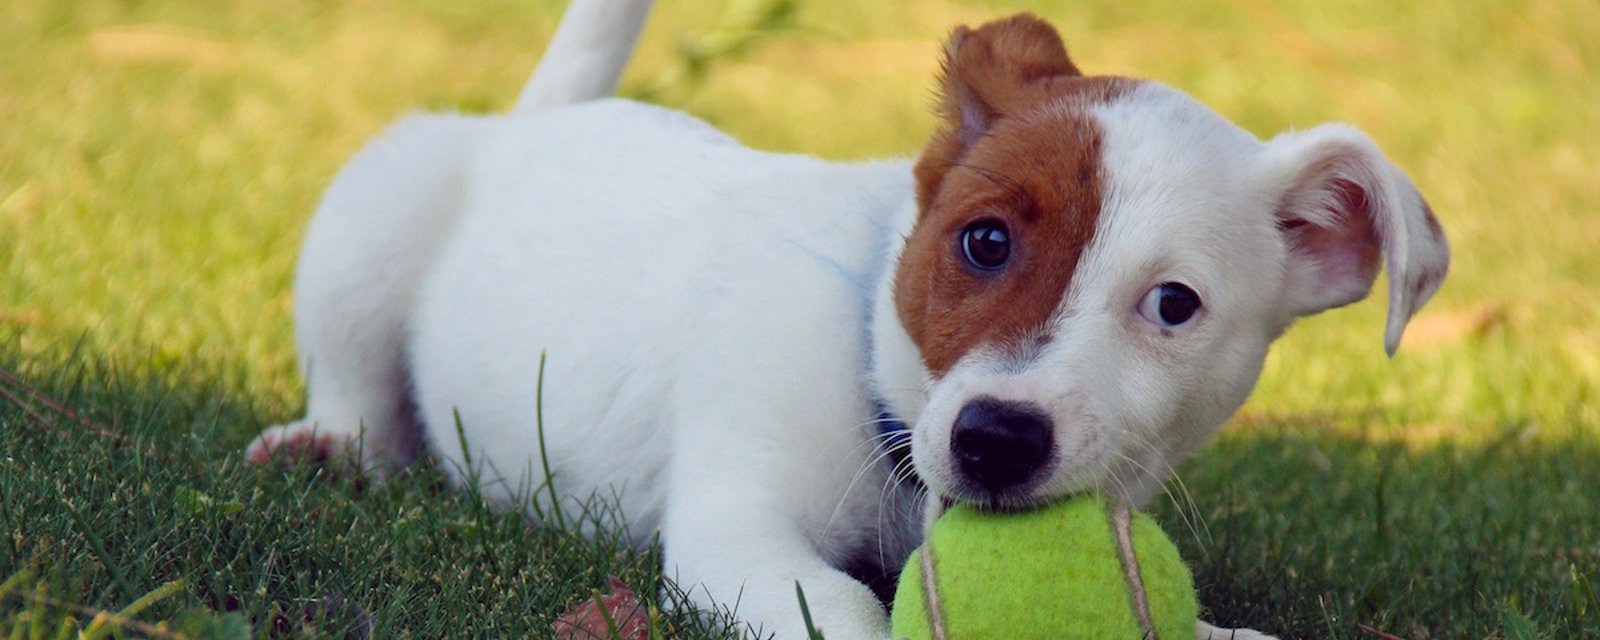 Pourquoi il ne faut pas donner de balles de tennis à un chien